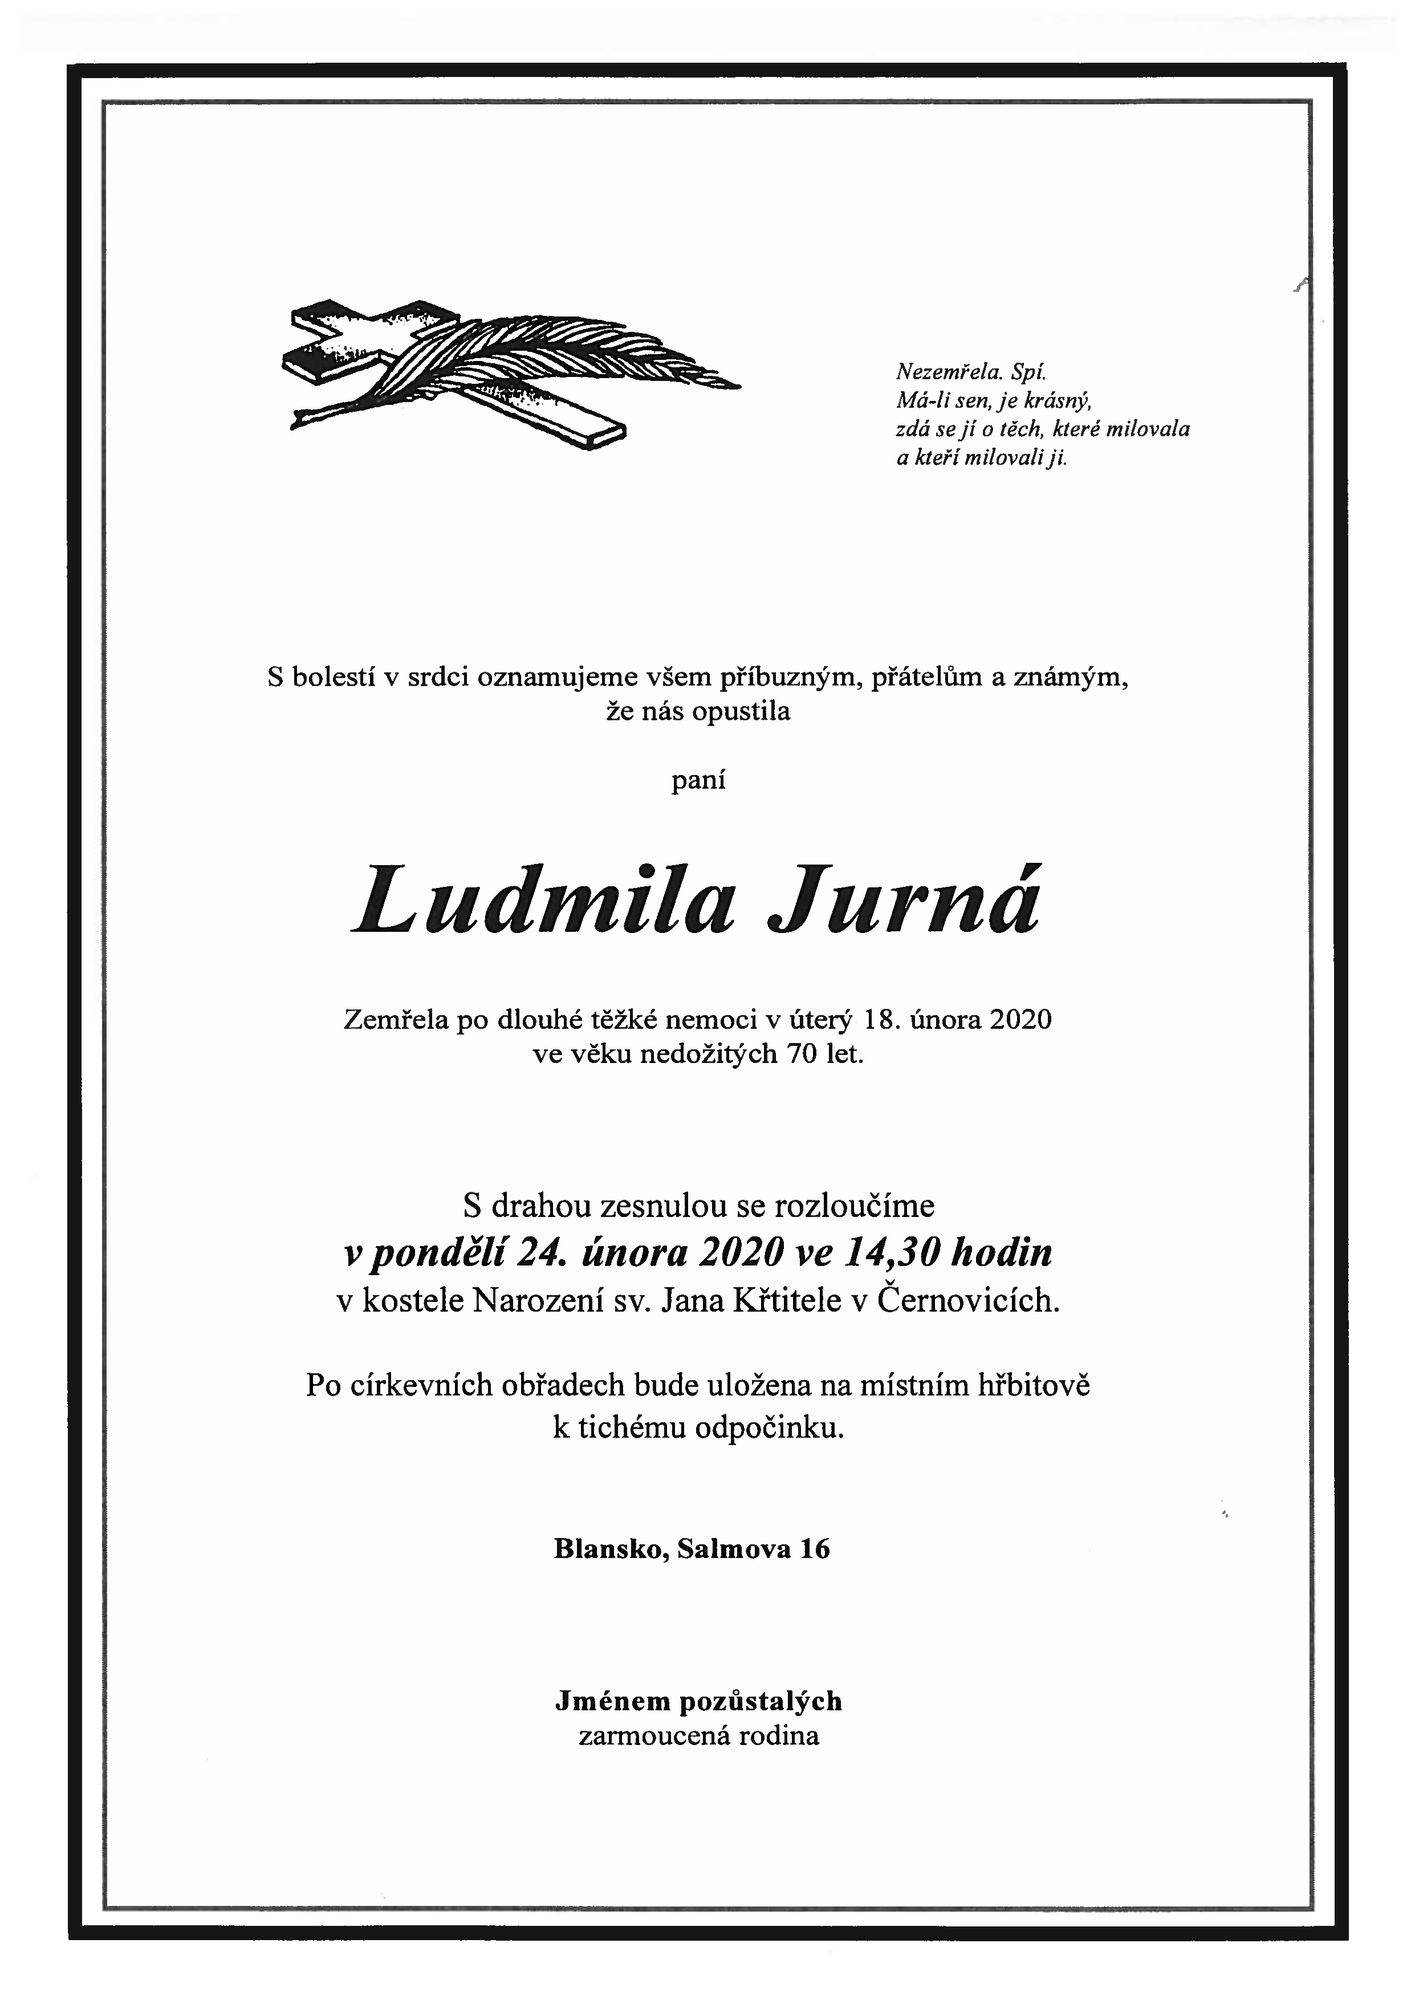 Ludmila Jurná